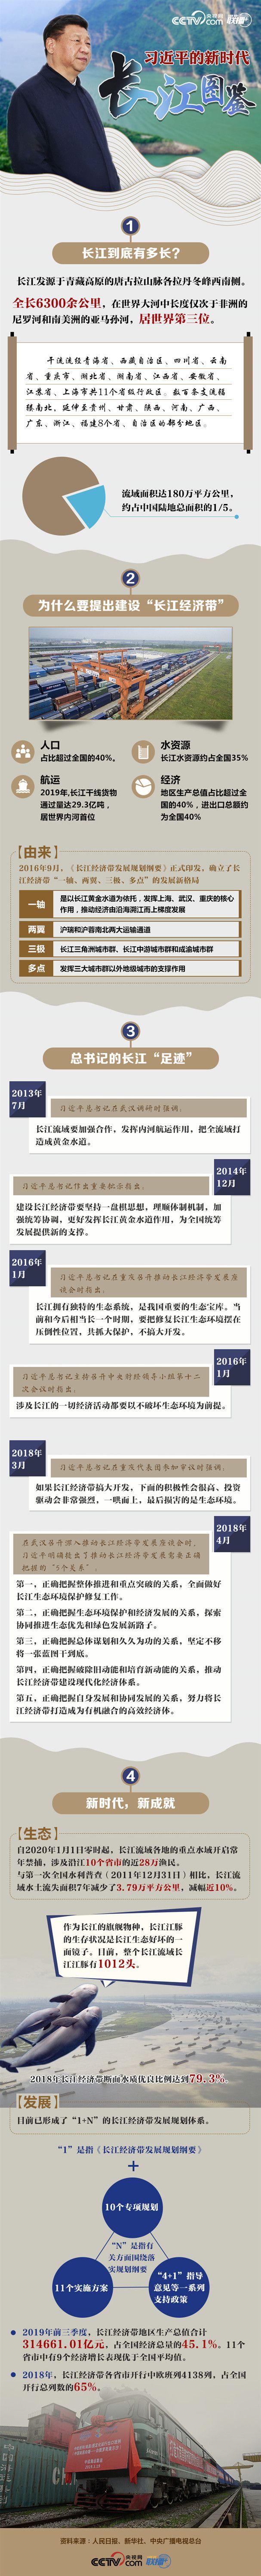 习近平的新时代长江图鉴西宁环保公司